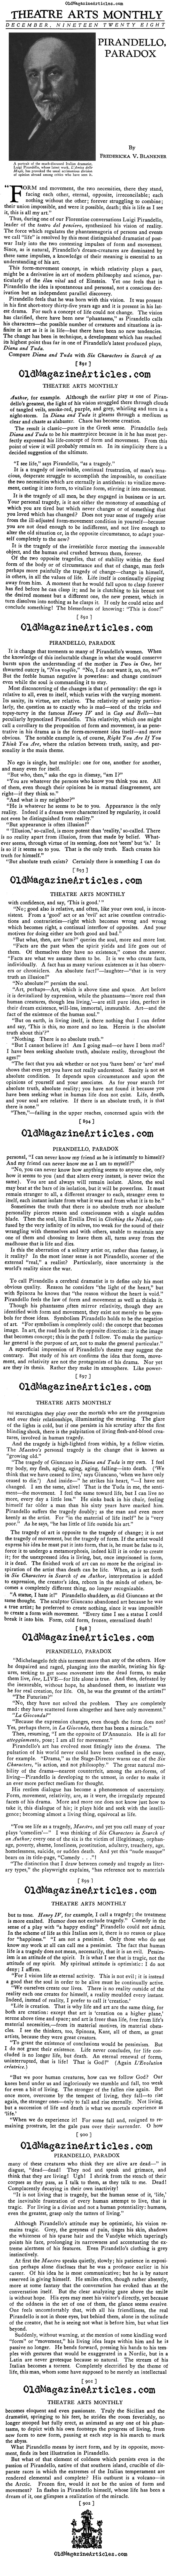 Conversations With Pirandello (Theatre Arts, 1928)